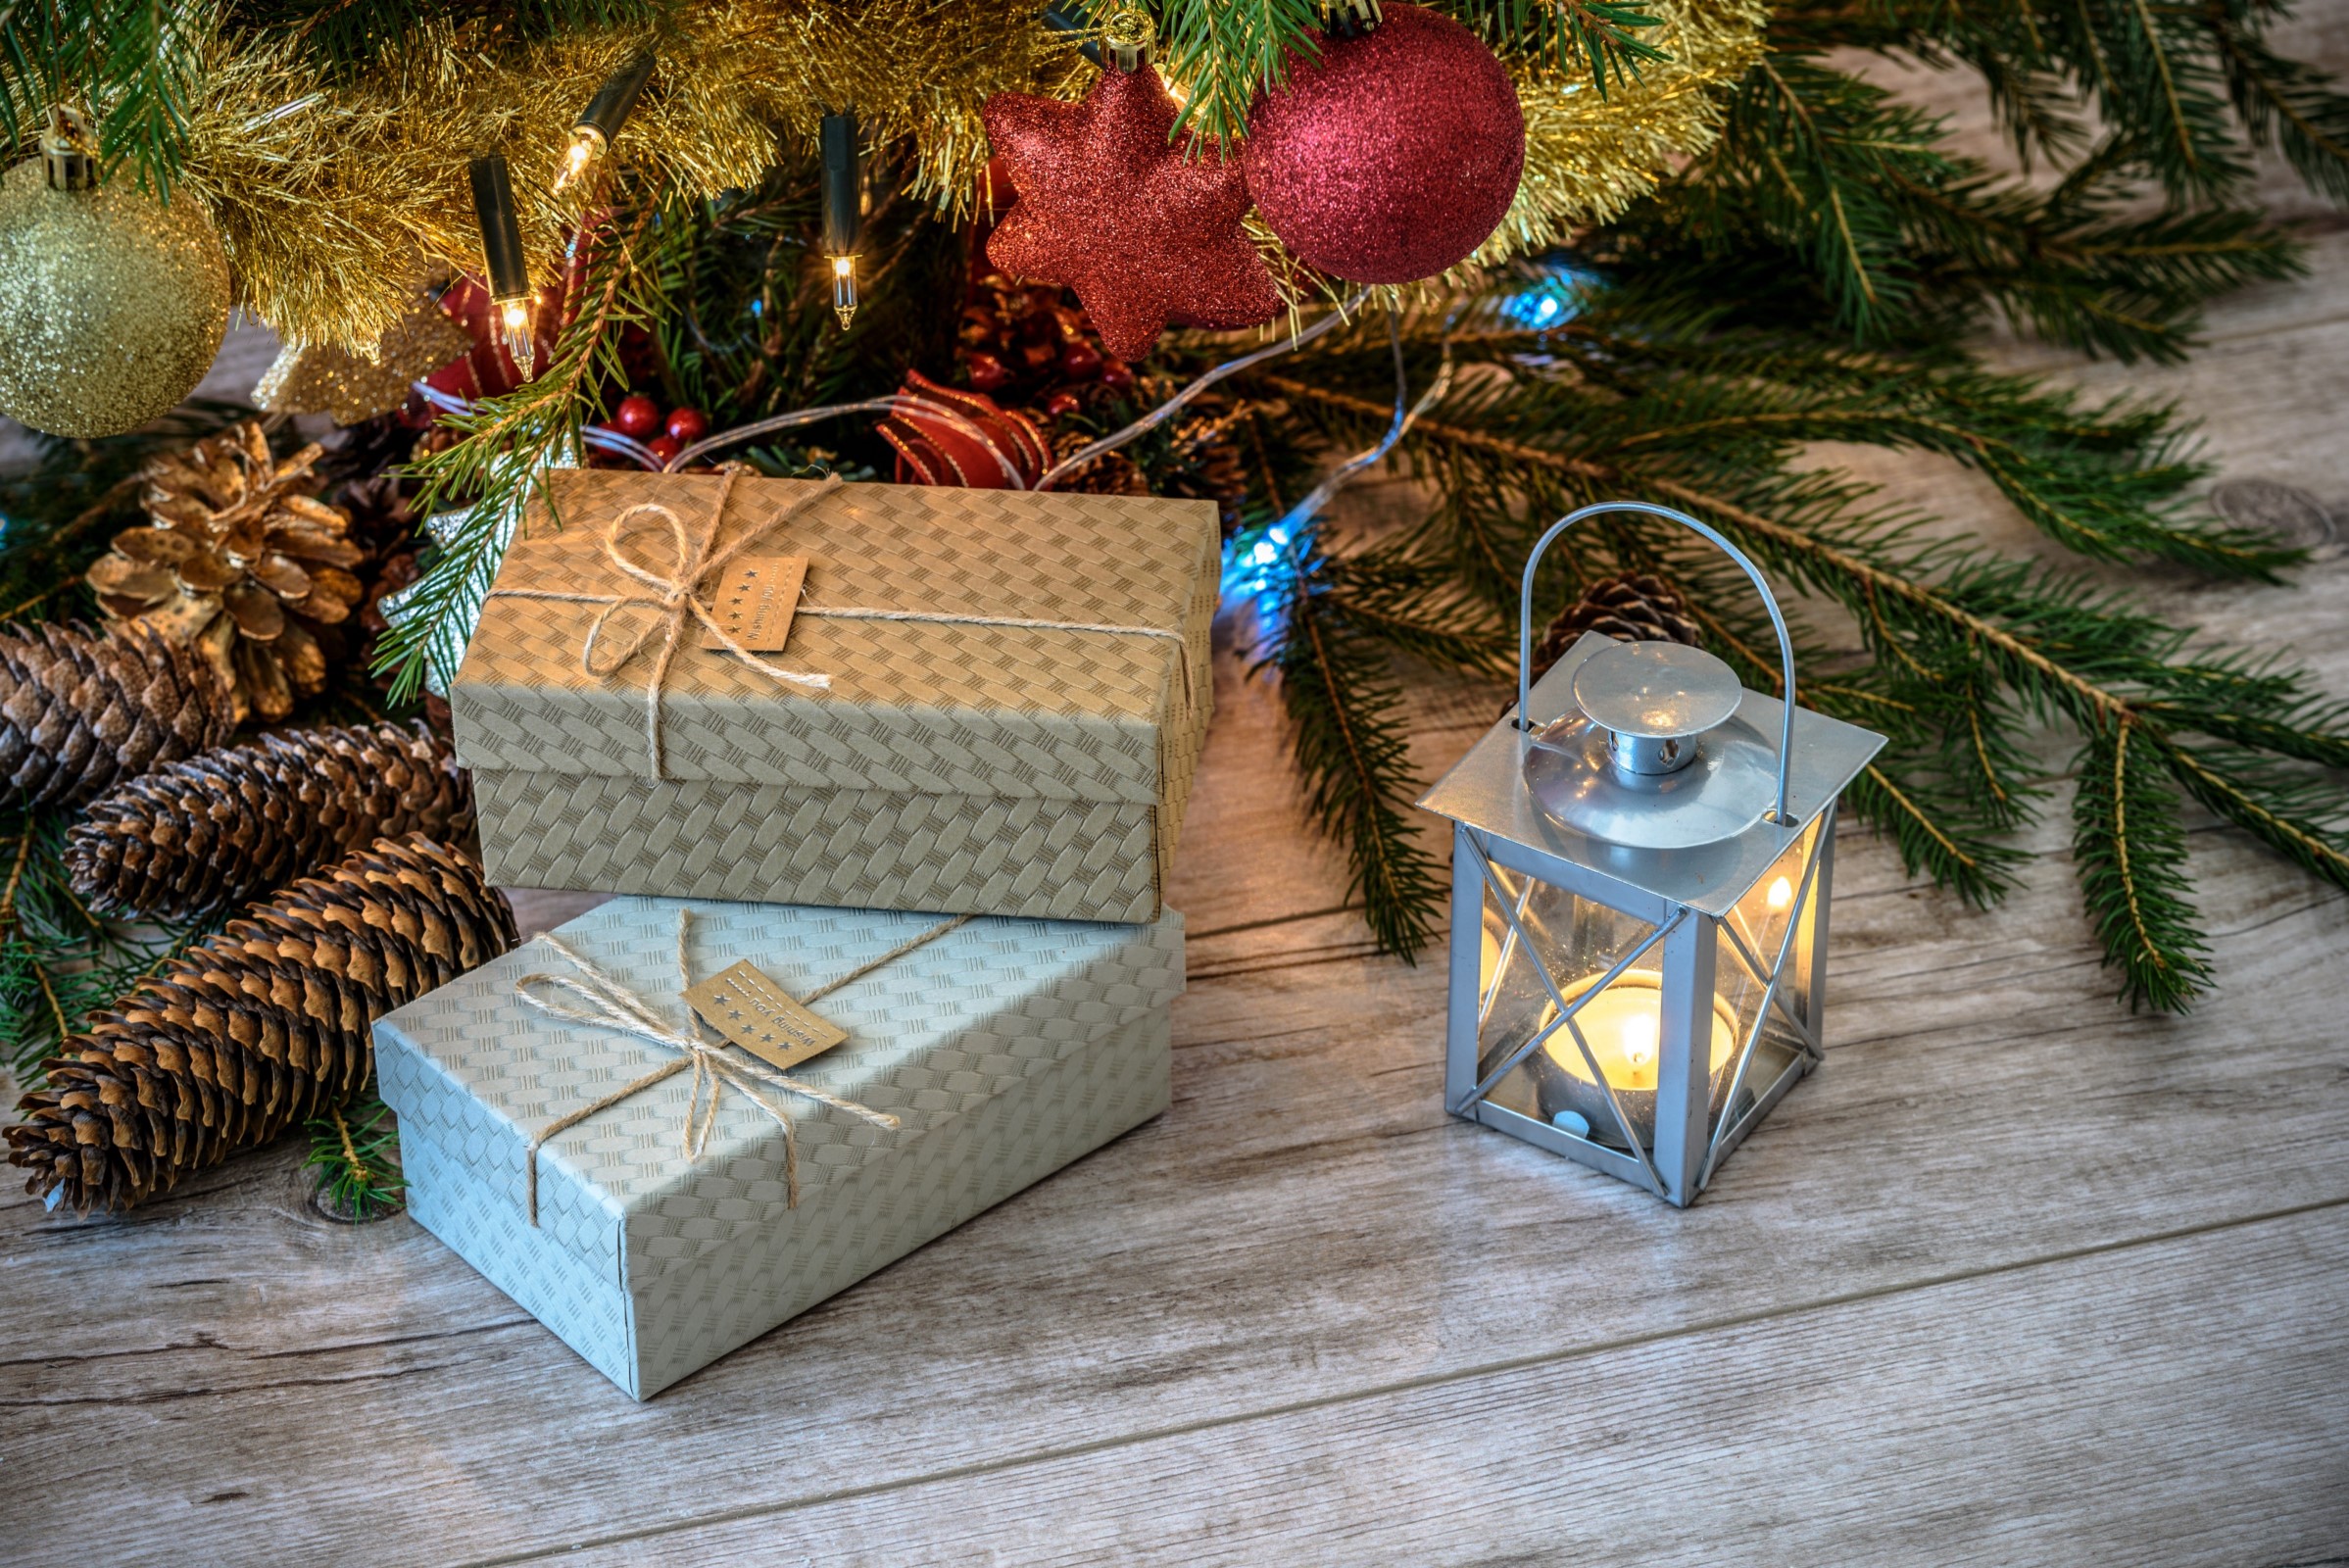 Christmas presents and lantern